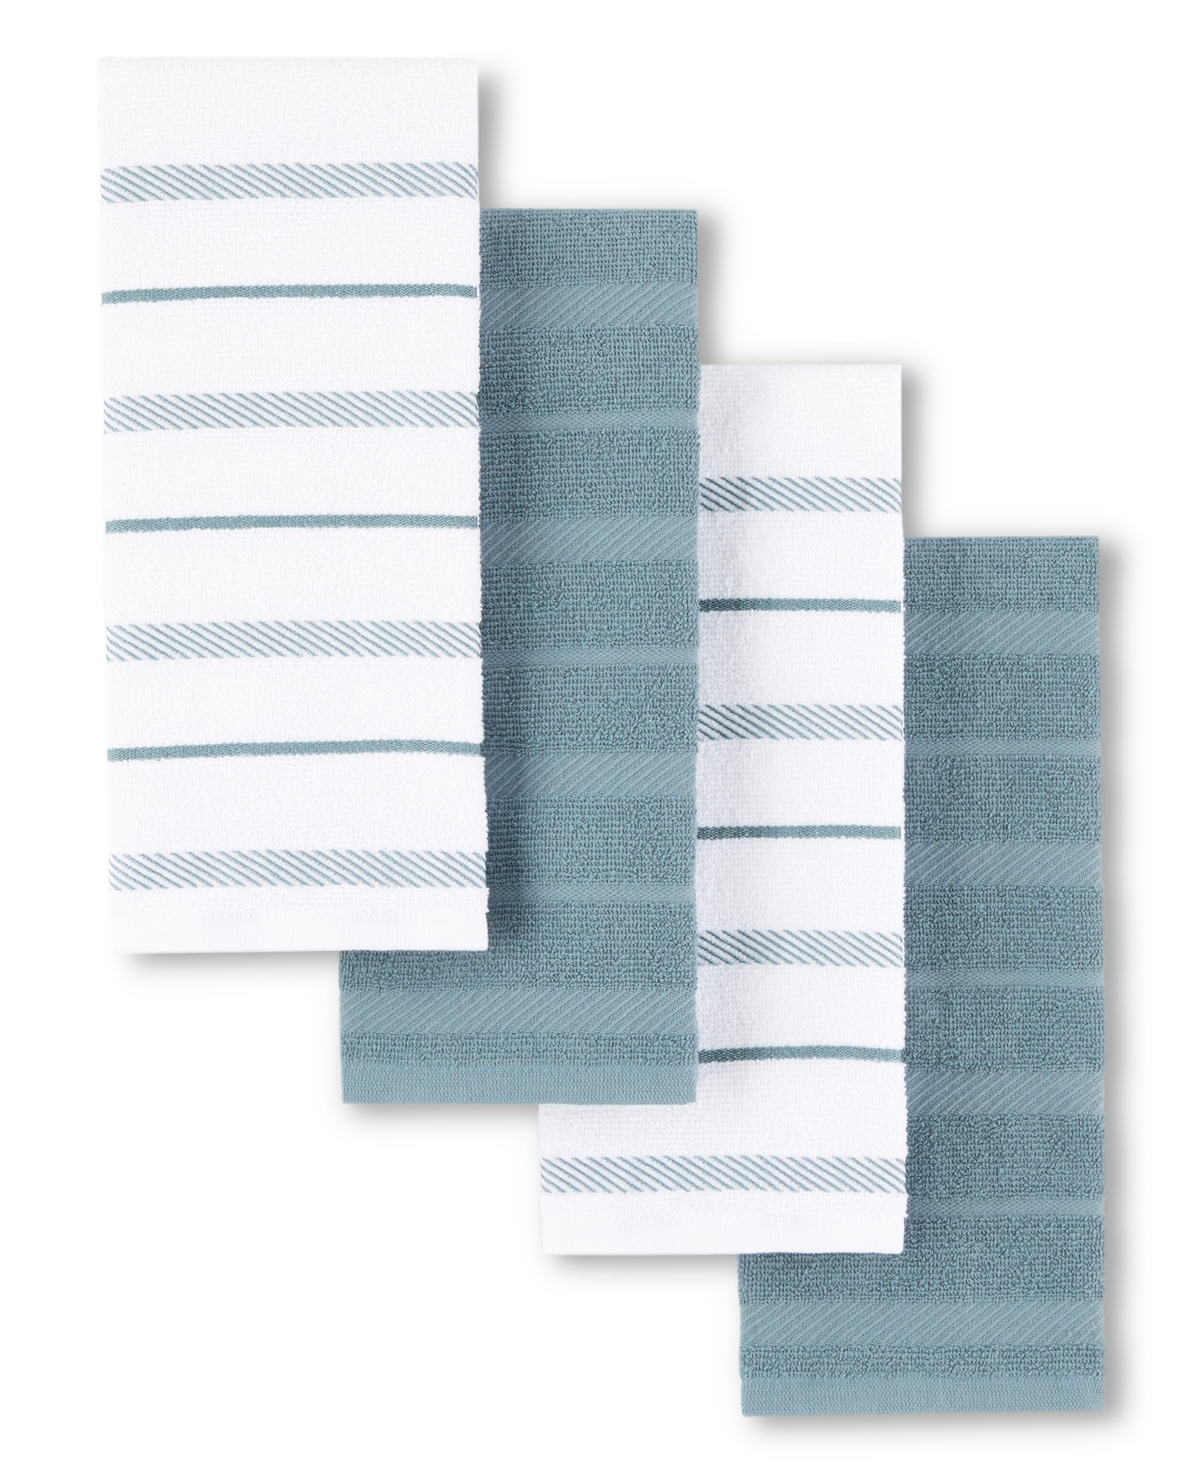 Kitchenaid Albany Kitchen Towel 4-pack Set, 16" X 26" In Fog Blue,white